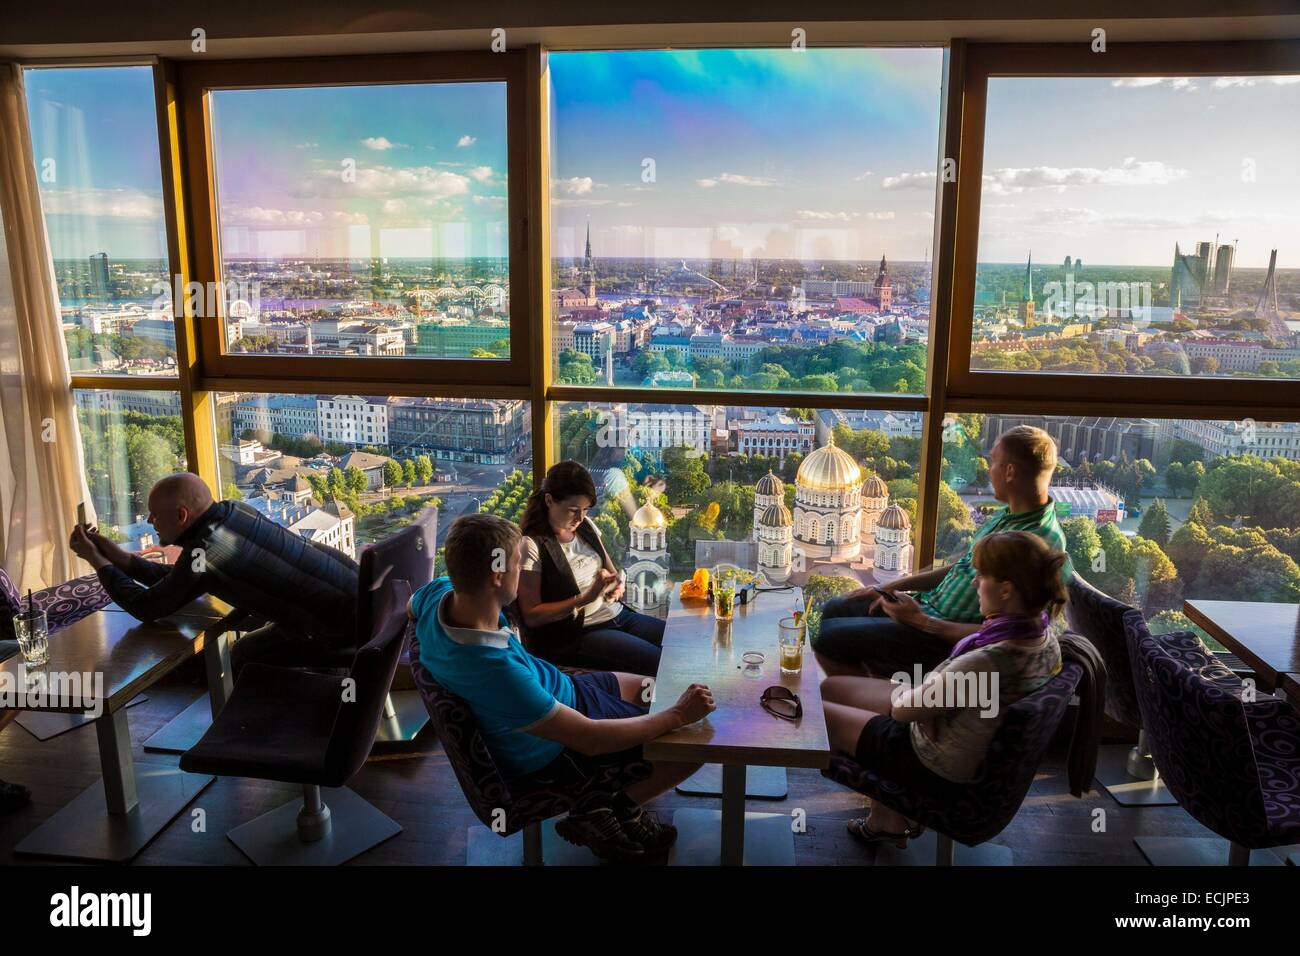 Lettonie (Pays Baltes), Riga, capitale européenne de la culture 2014, centre historique classé Patrimoine Mondial de l'UNESCO, bar restaurant Skyline au sommet de la tour du Radisson Blu avec vue sur la cathédrale orthodoxe Stock Photo